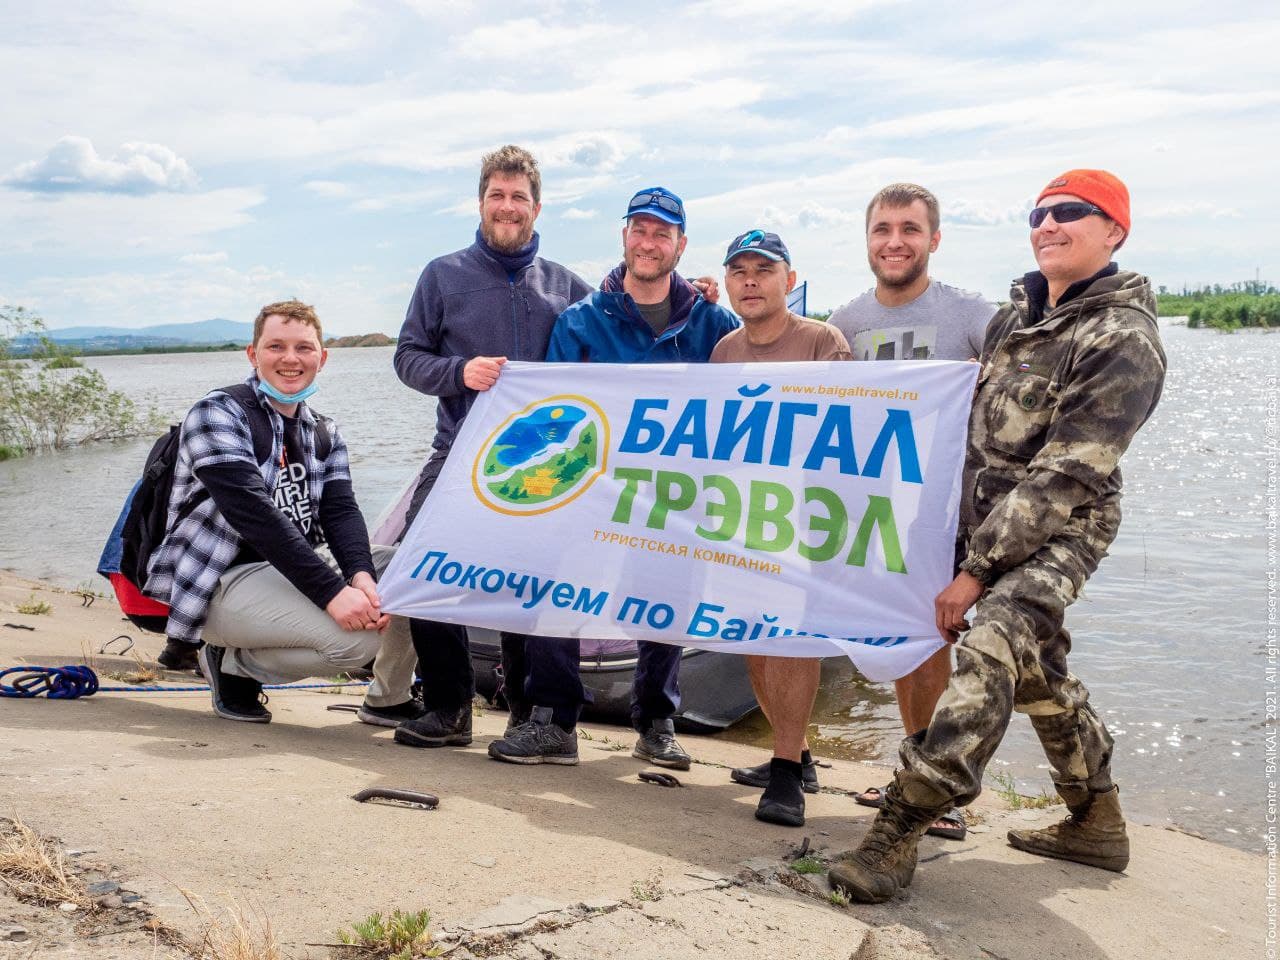 Экстремалы на катамаране решили пройти в Охотское море через Байкал - сейчас они сделали остановку в Улан-Удэ